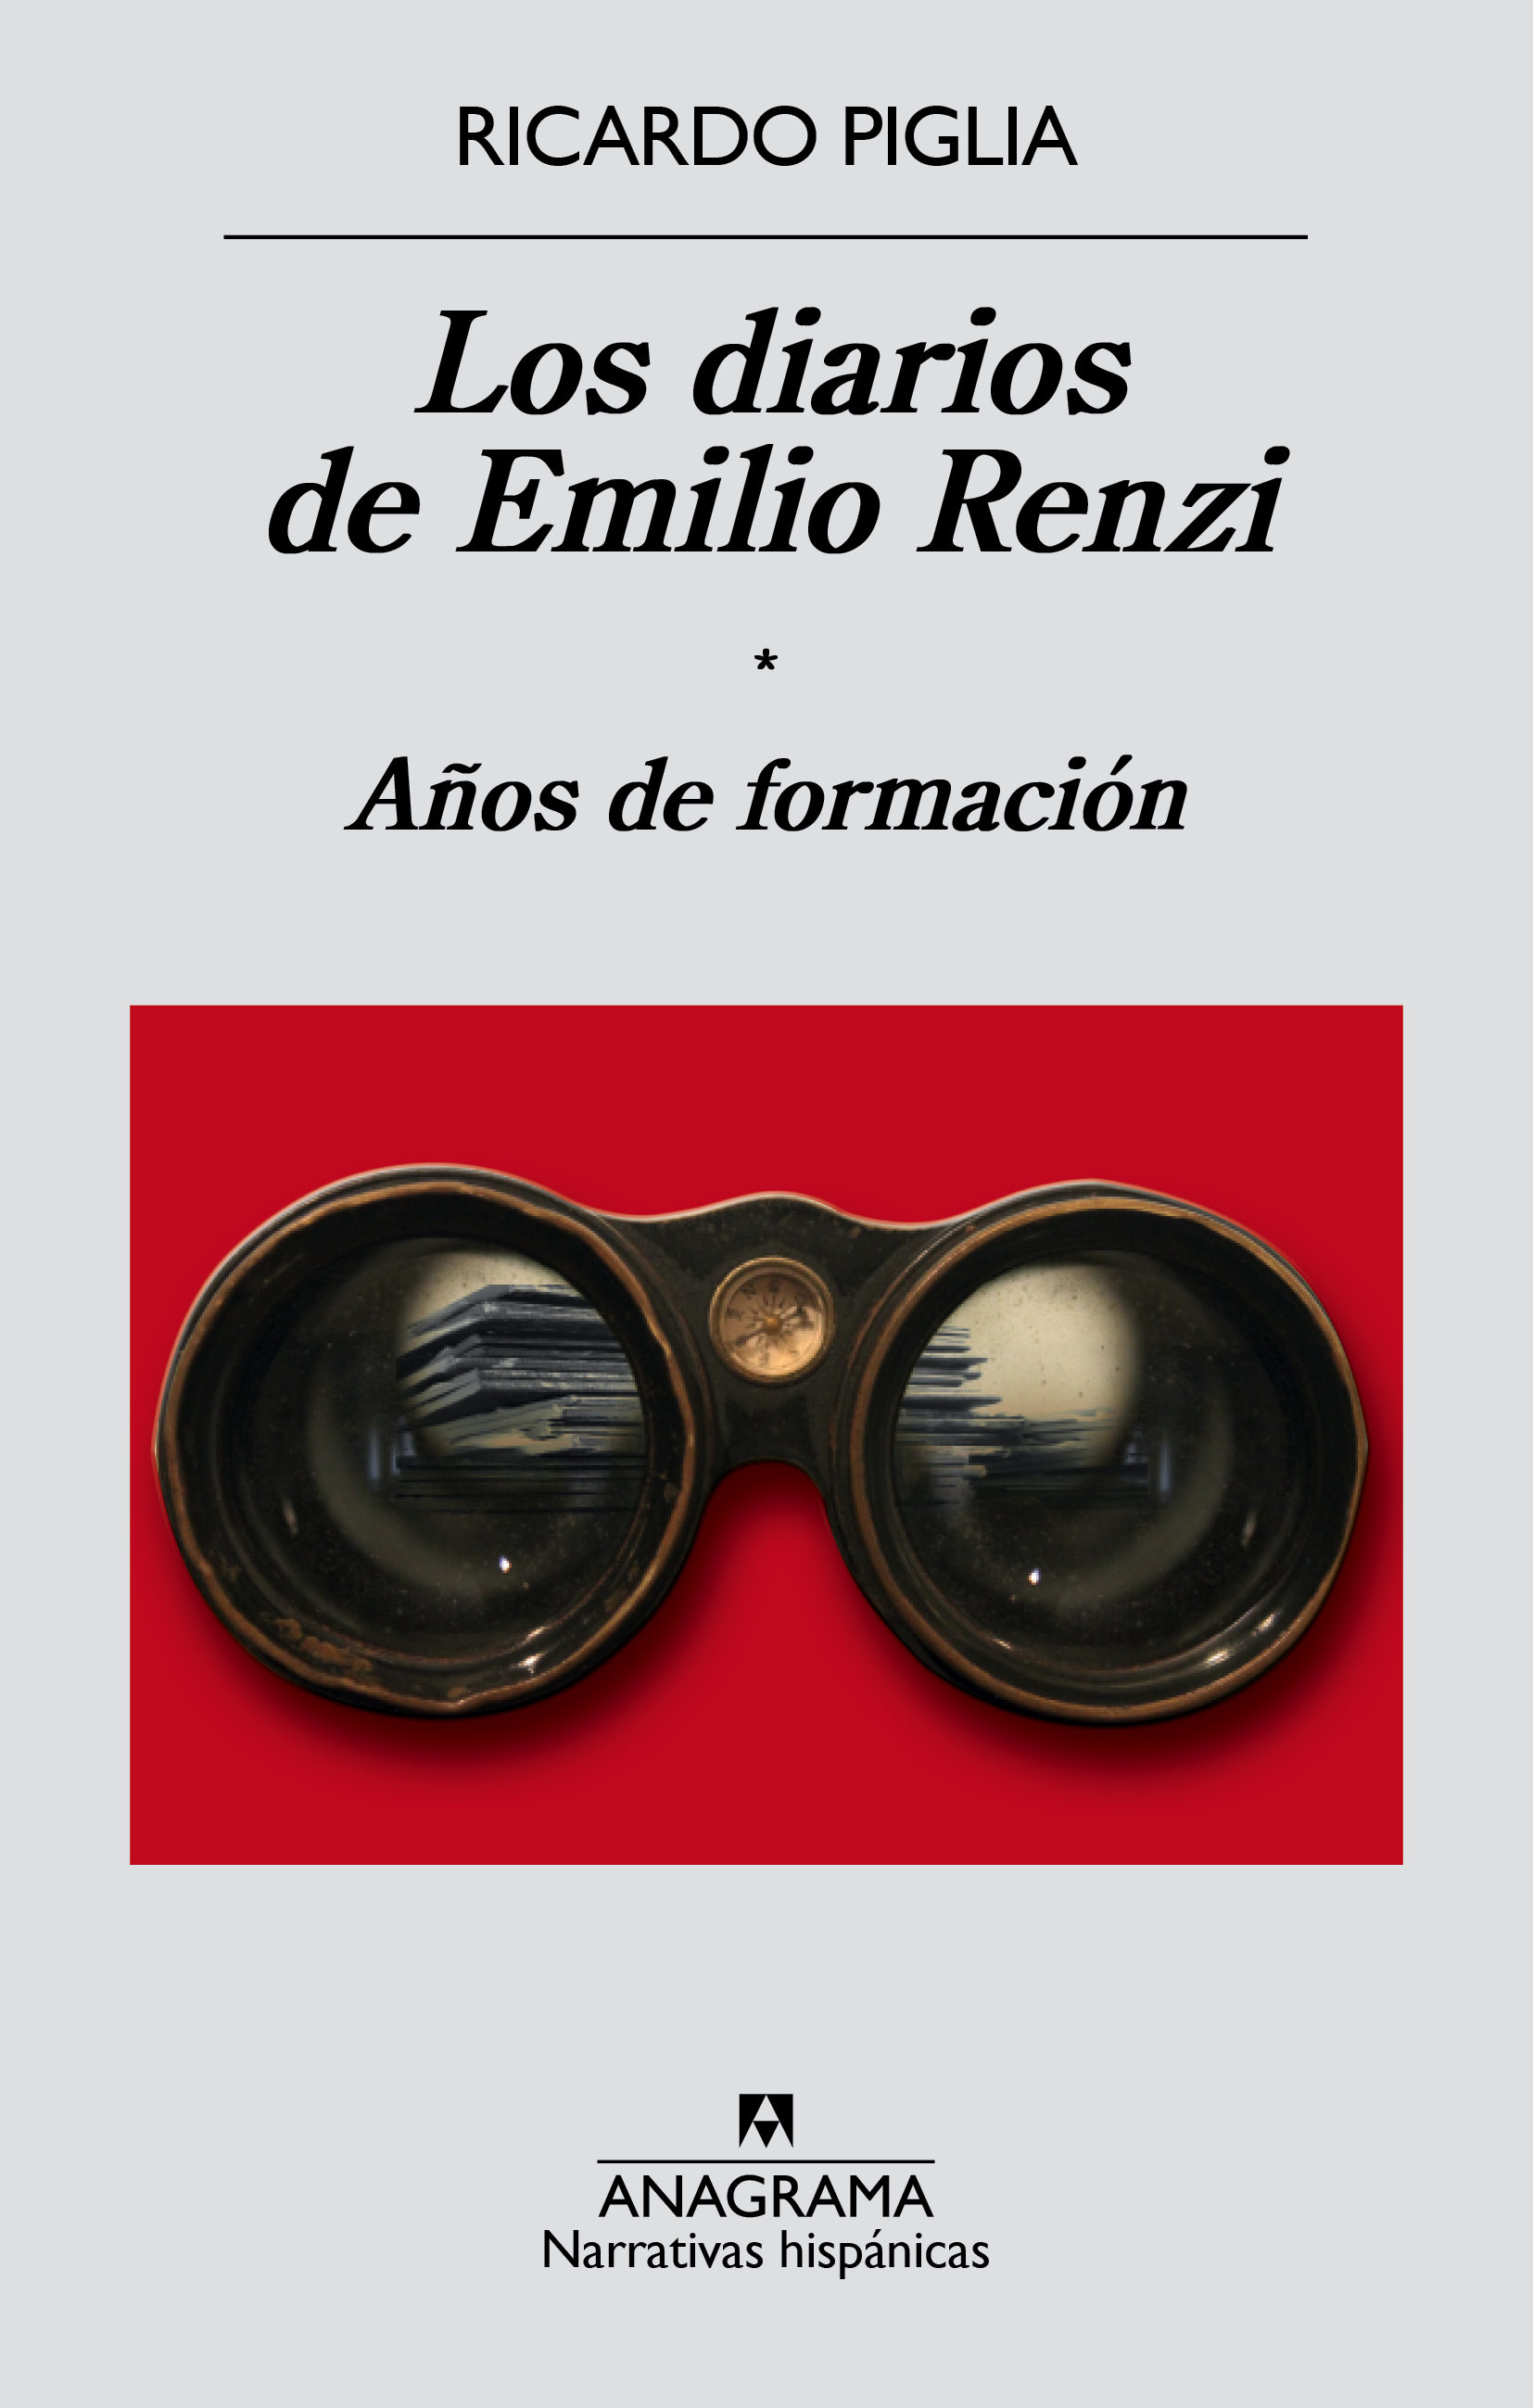 Los diarios de Emilio Renzi. Años de formación de Ricardo Piglia